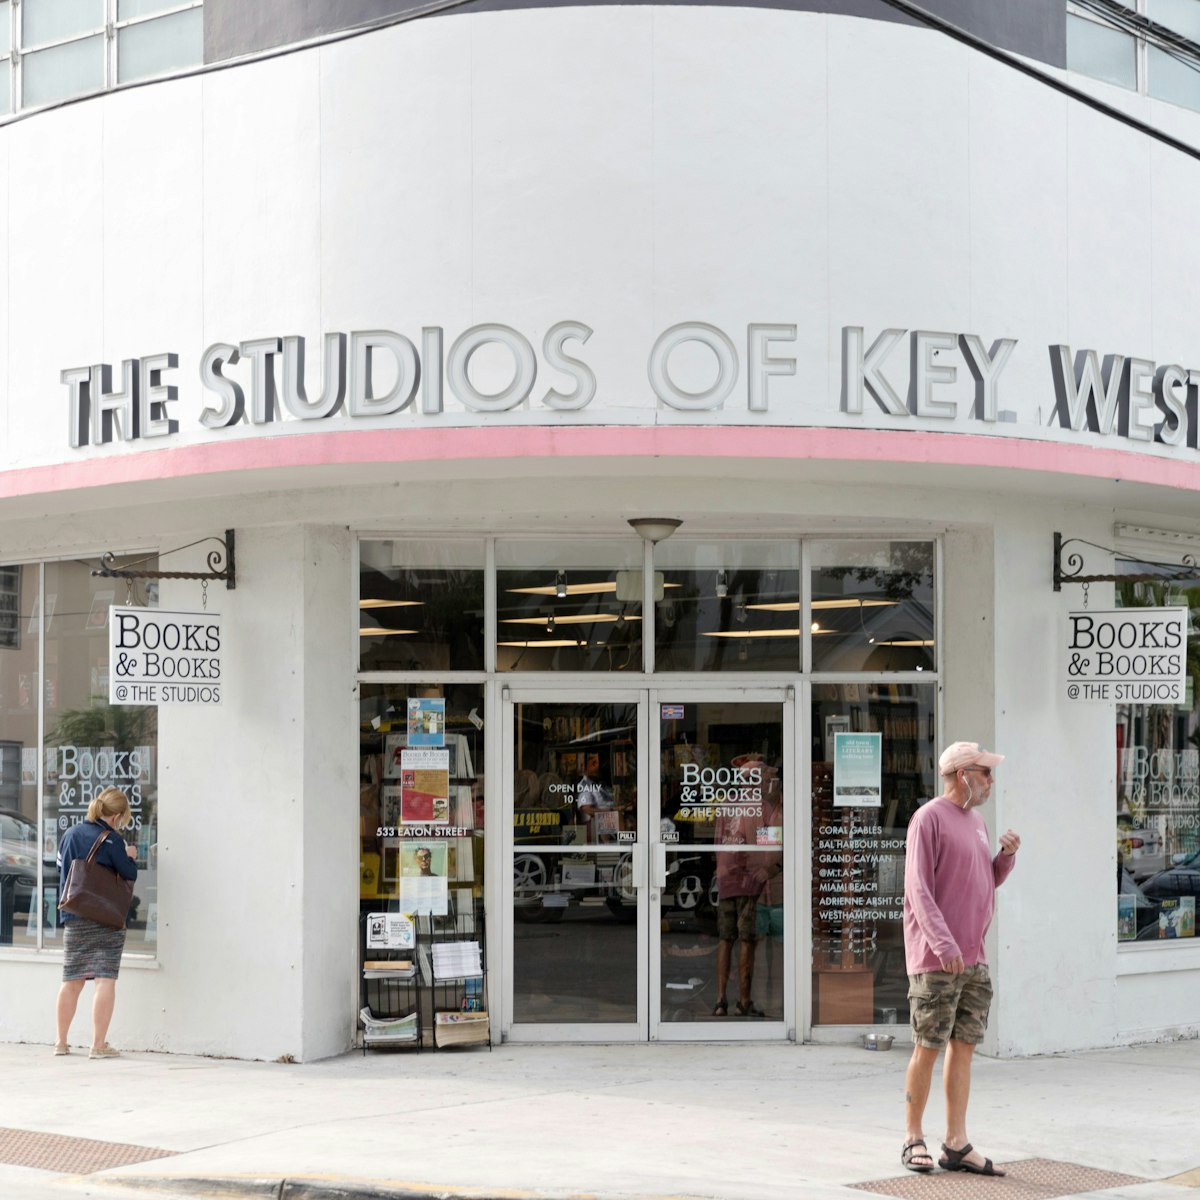 Keywest, Florida, United States, January 17 2018:The Studios Of Key West